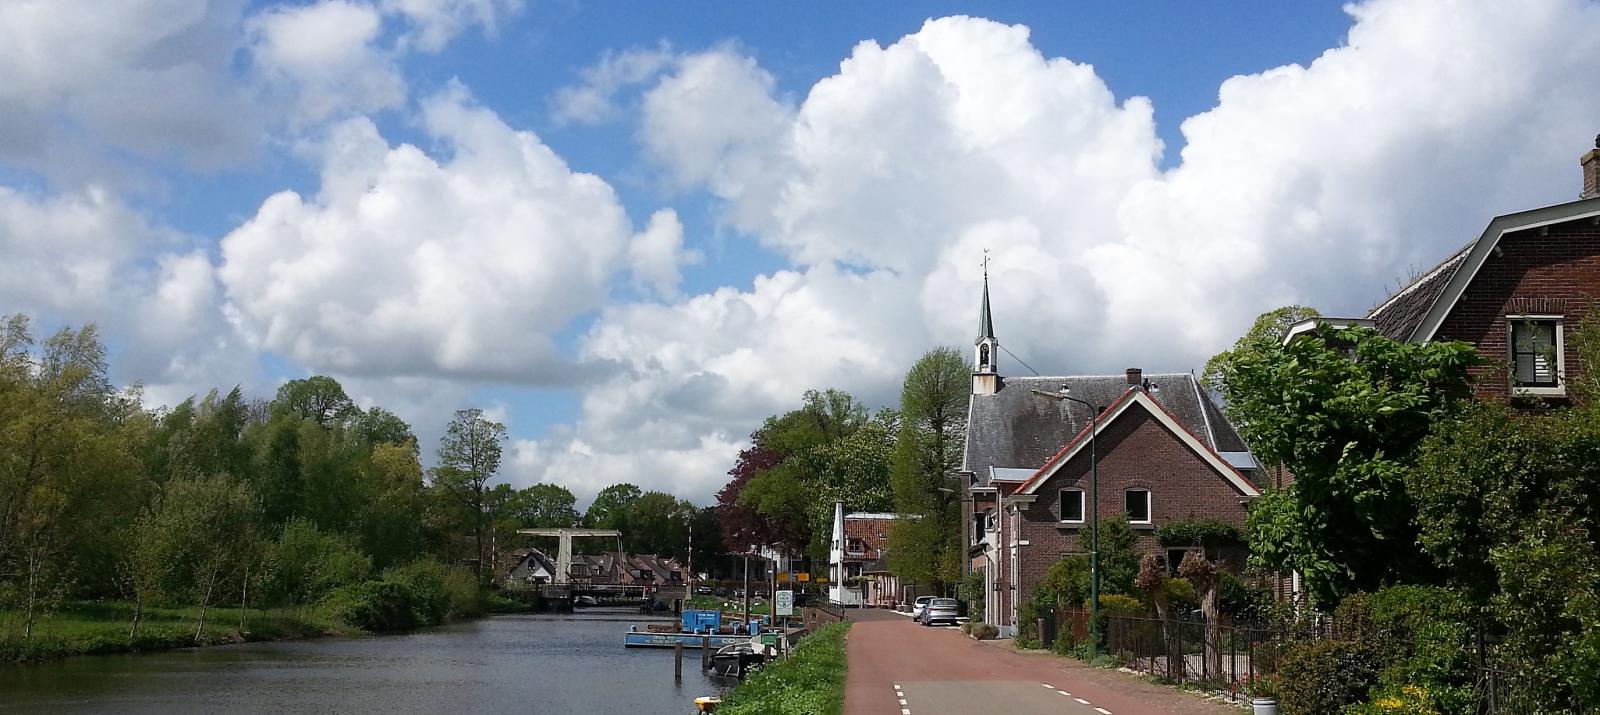 River Vecht near Oud Zuilen